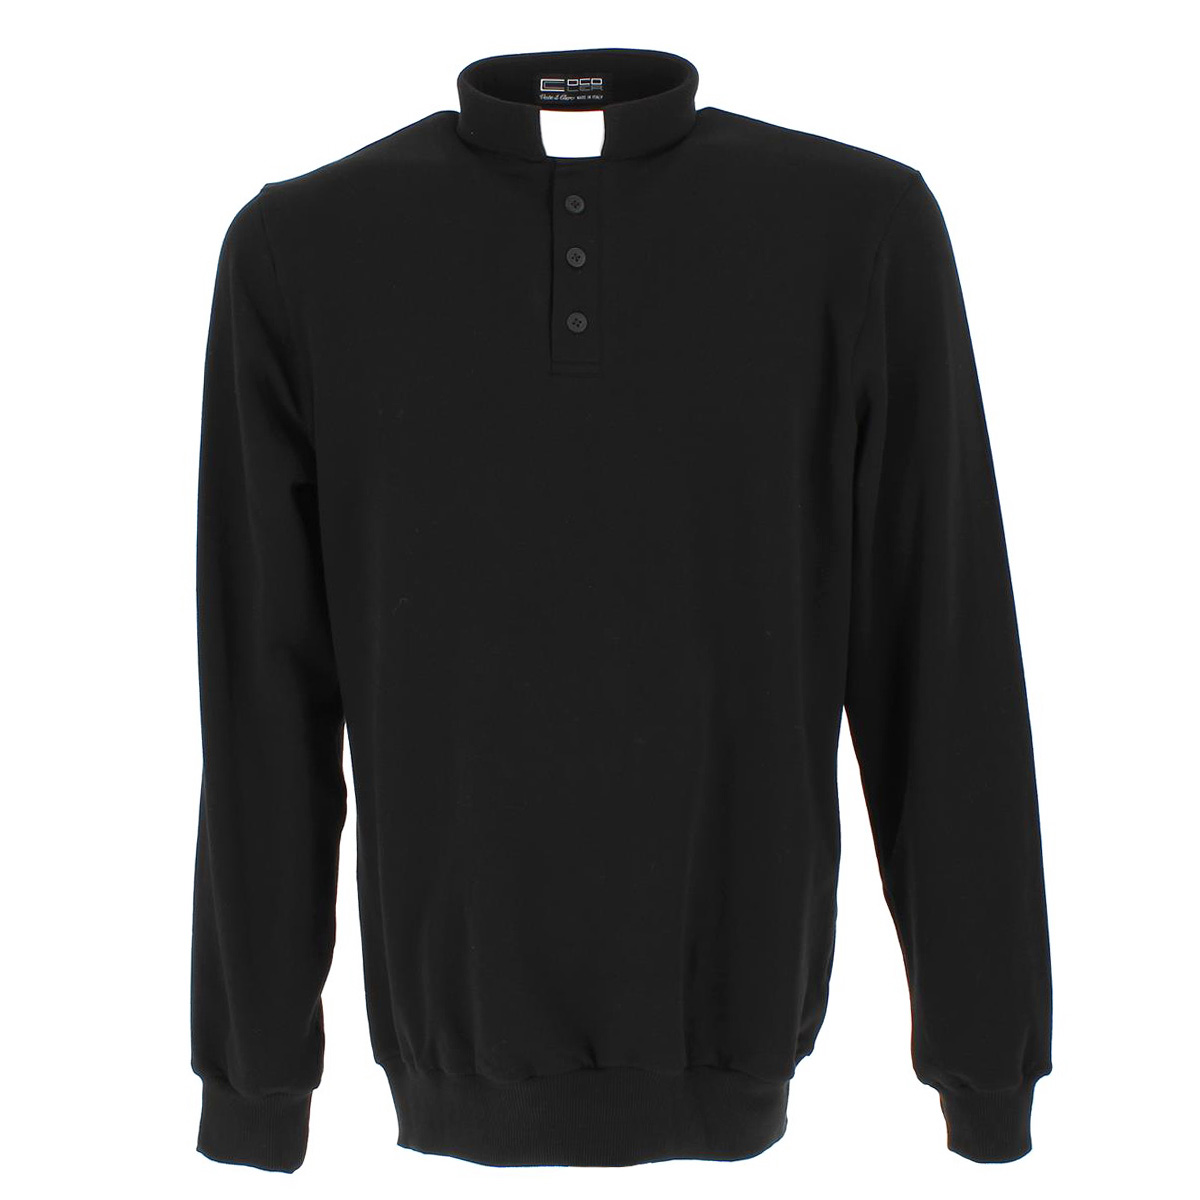 Black fleece cotton Clergy polo shirt 980018